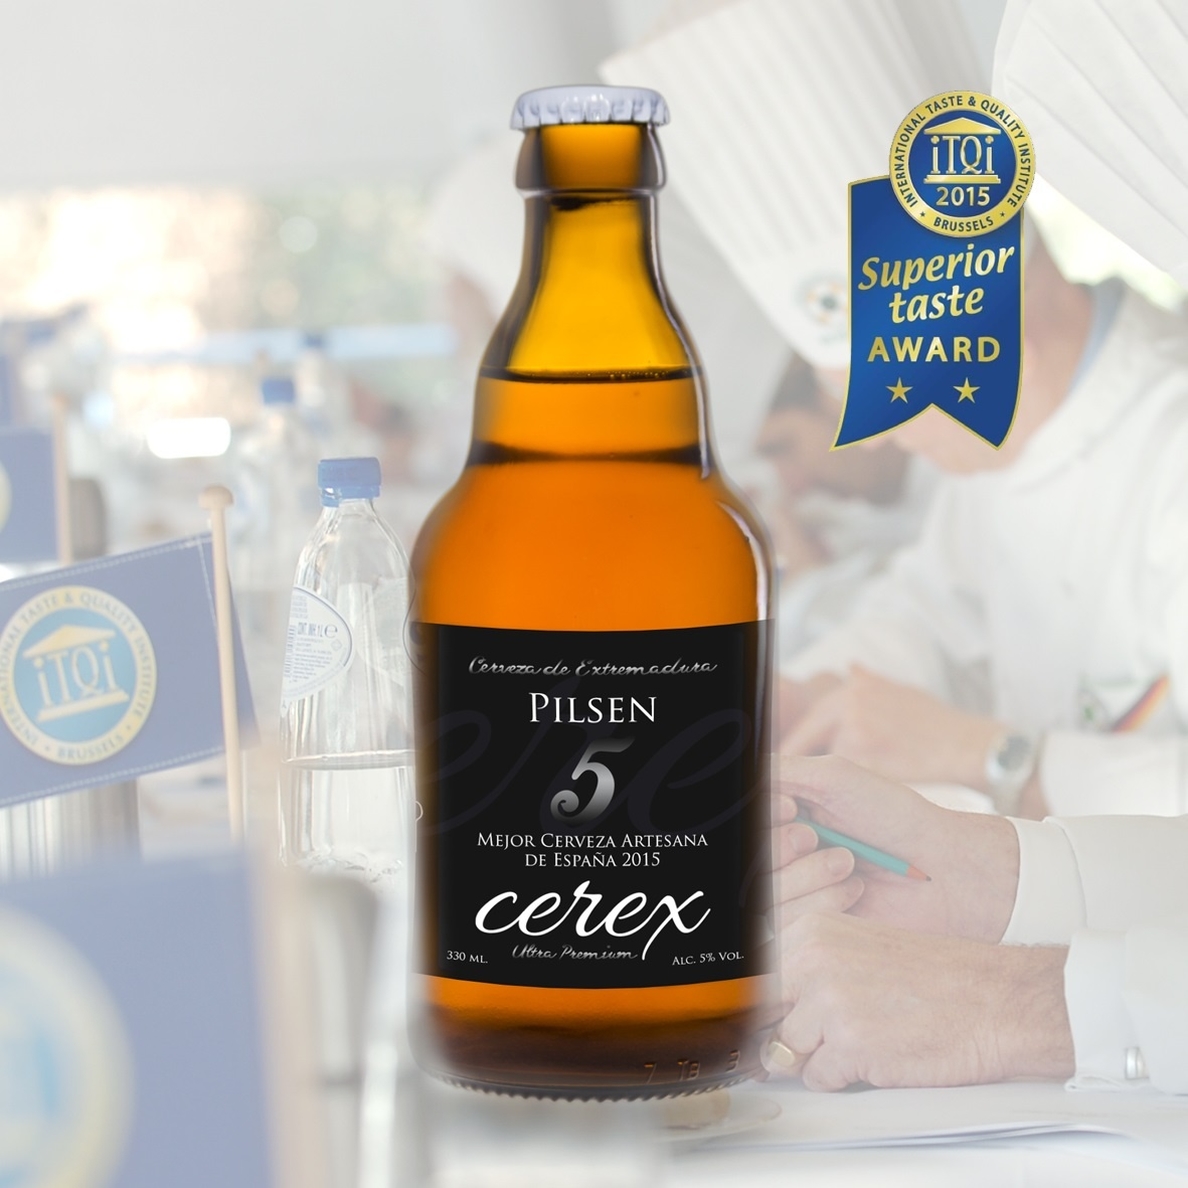 La cerveza extremeña Cerex Pilsen obtiene dos estrellas de oro en los Superior Taste Awards de Bruselas